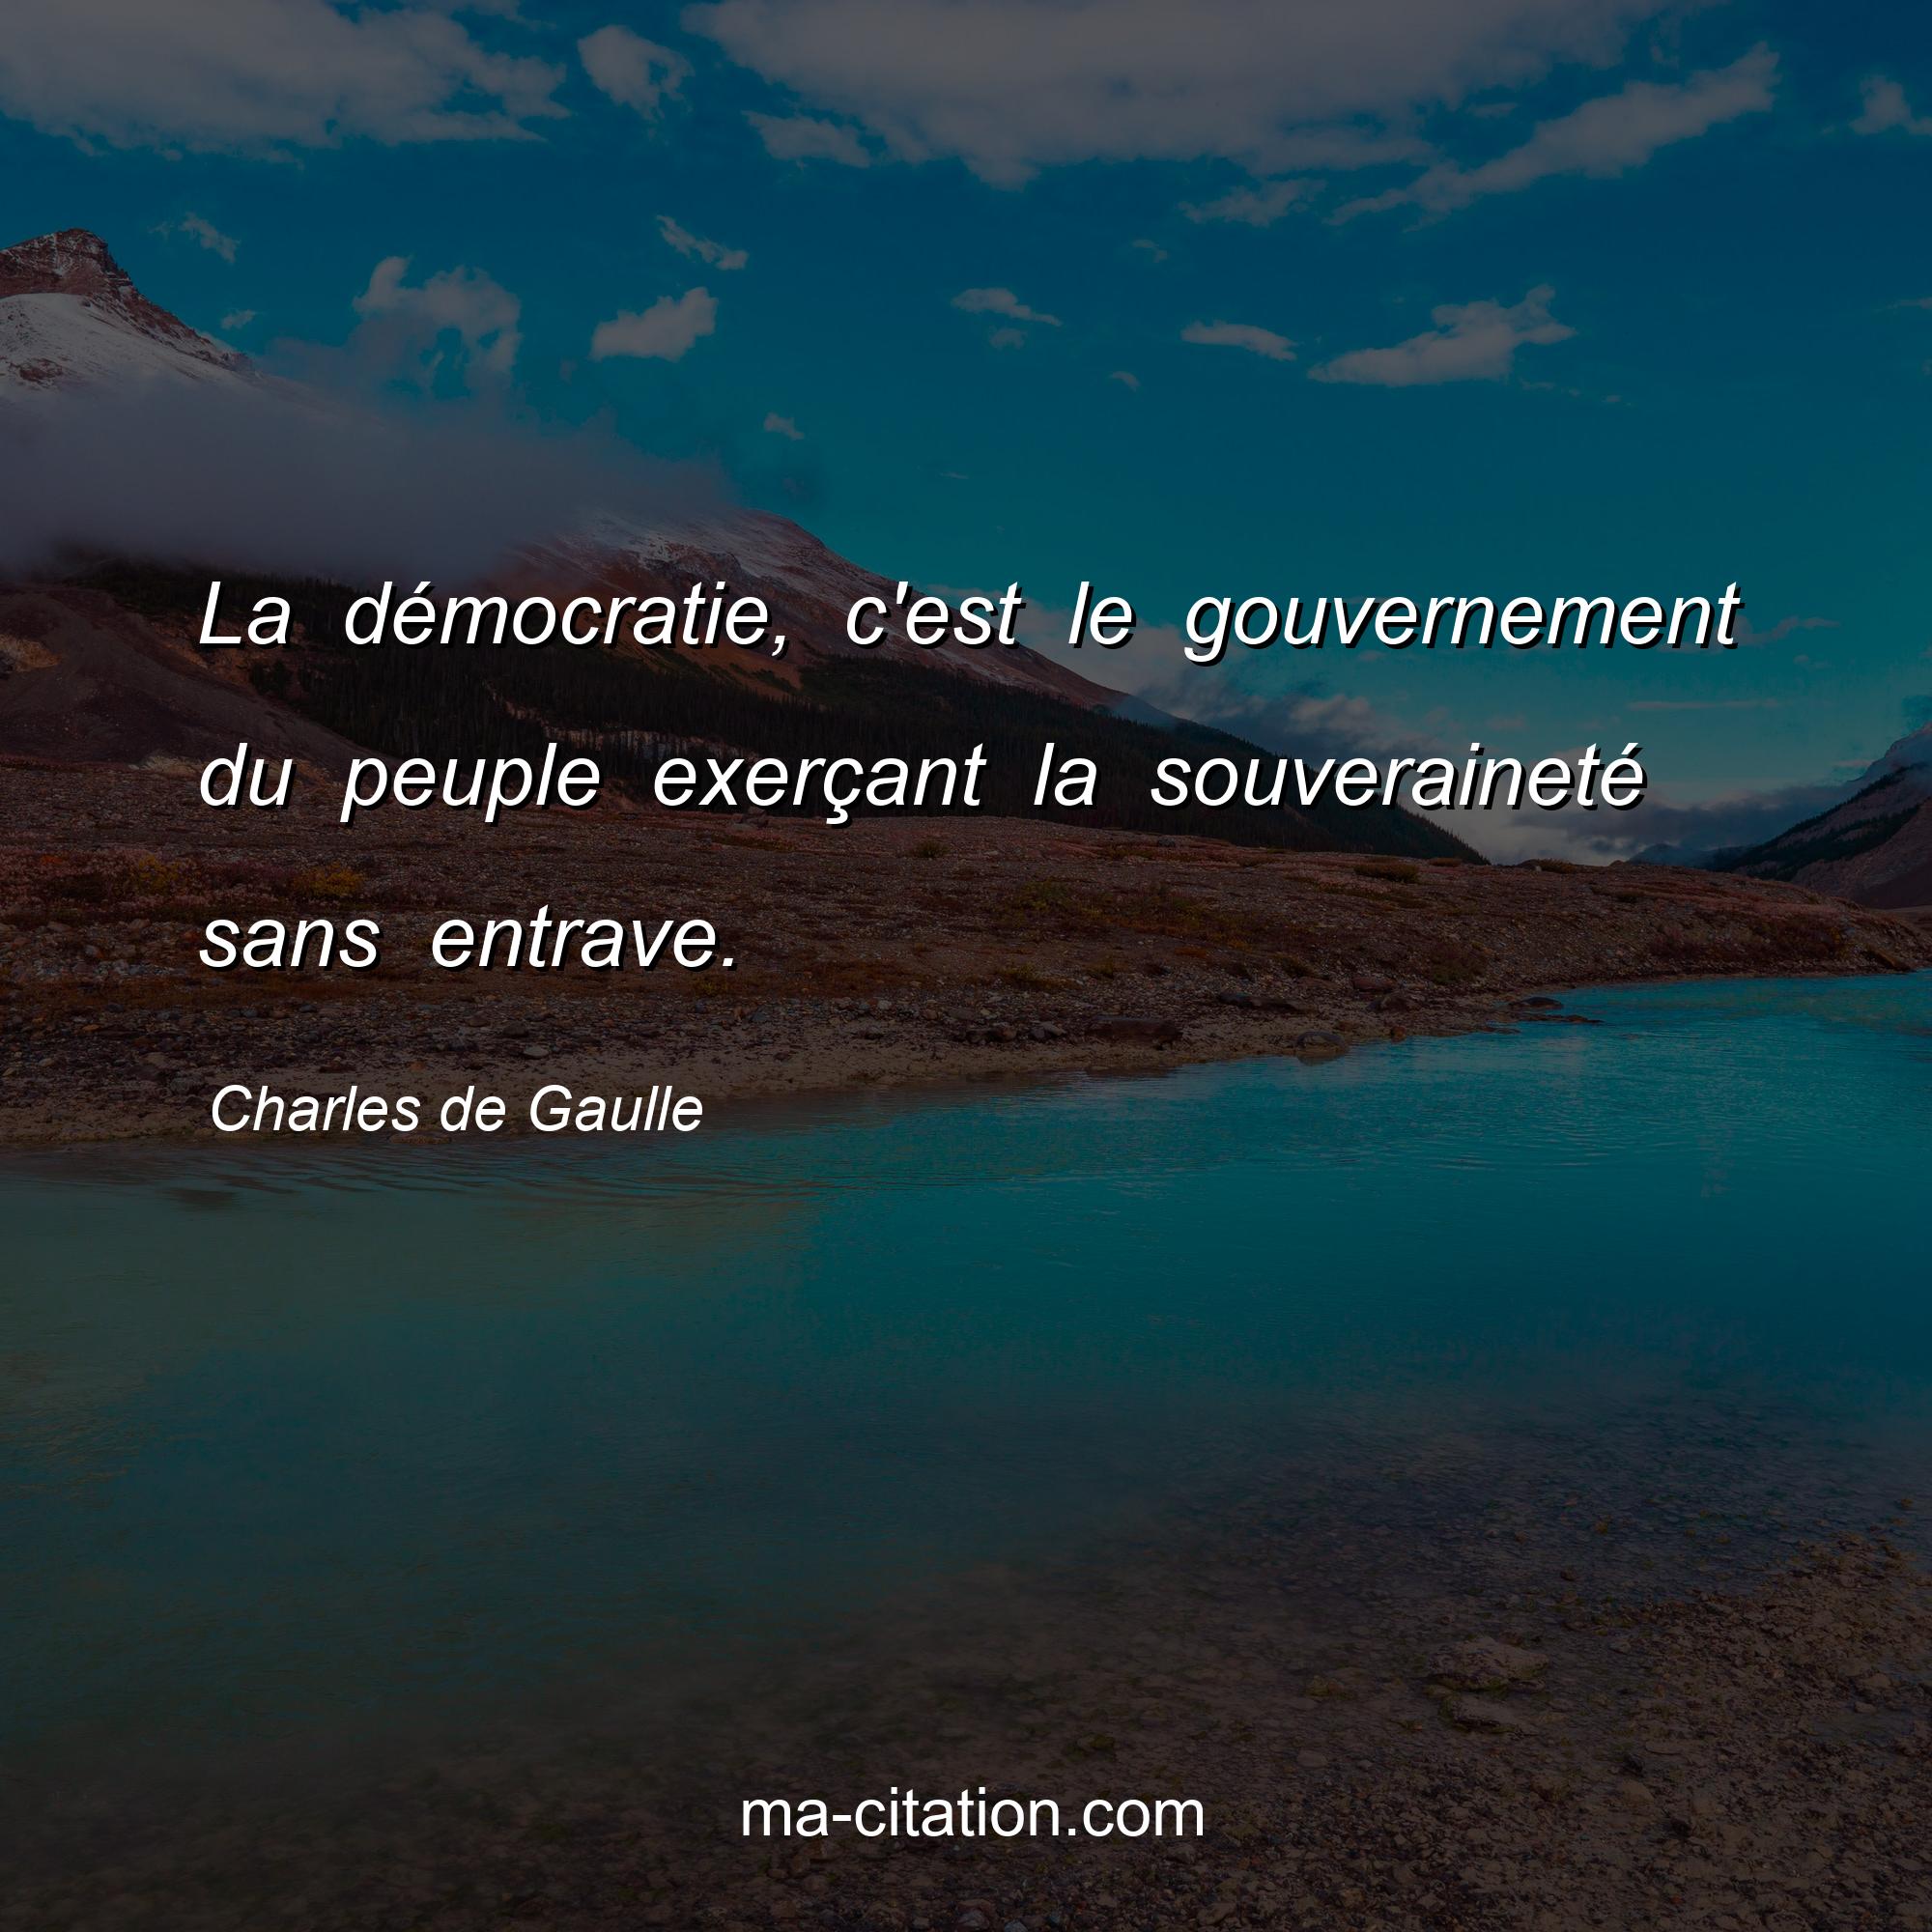 Charles de Gaulle : La démocratie, c'est le gouvernement du peuple exerçant la souveraineté sans entrave.